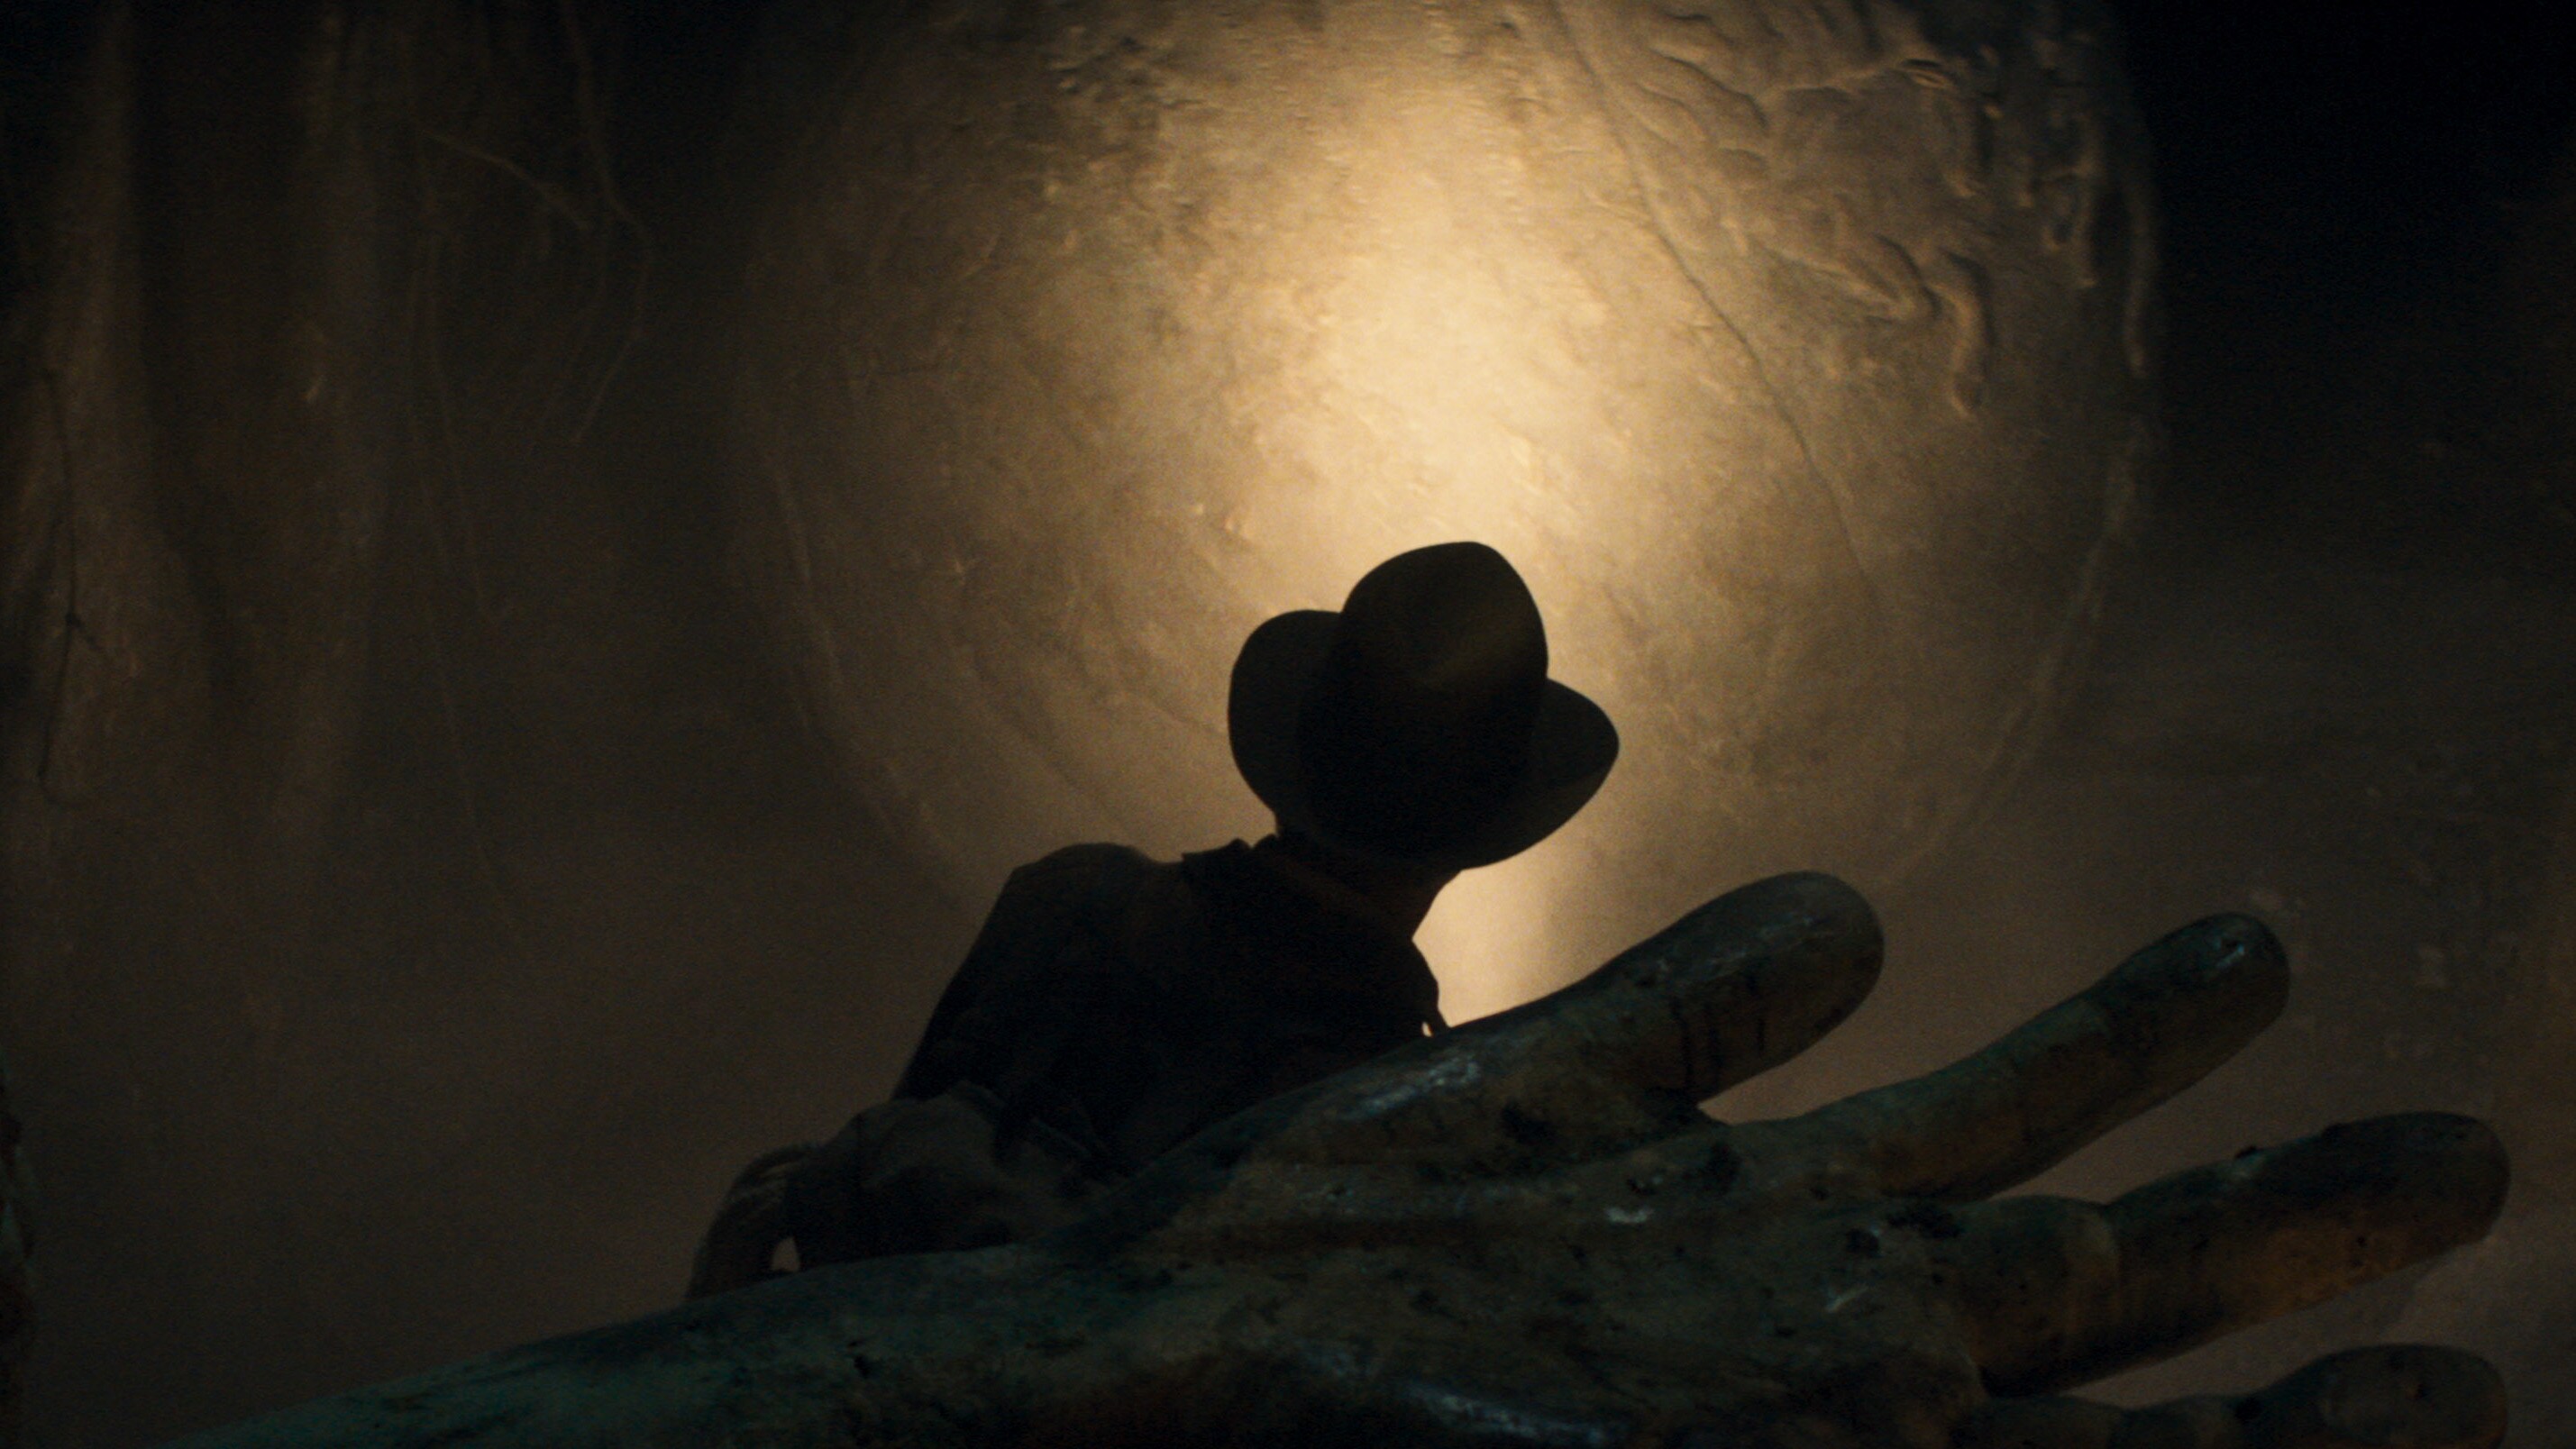 Indiana Jones in cave.